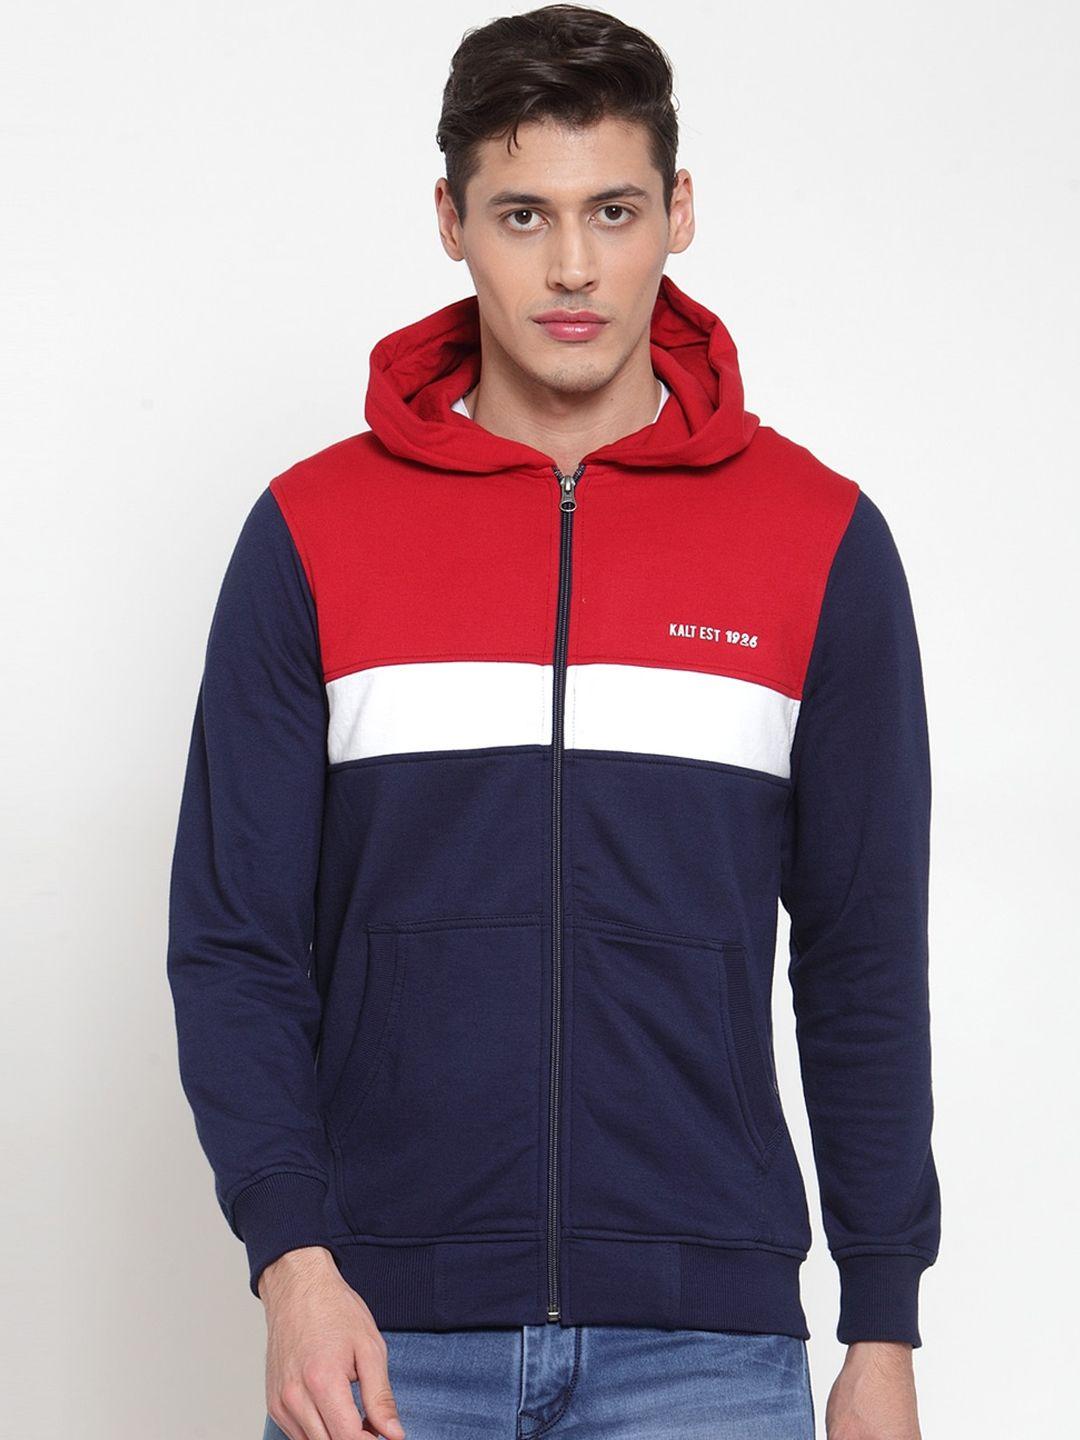 kalt men navy blue & red colourblocked sporty jacket